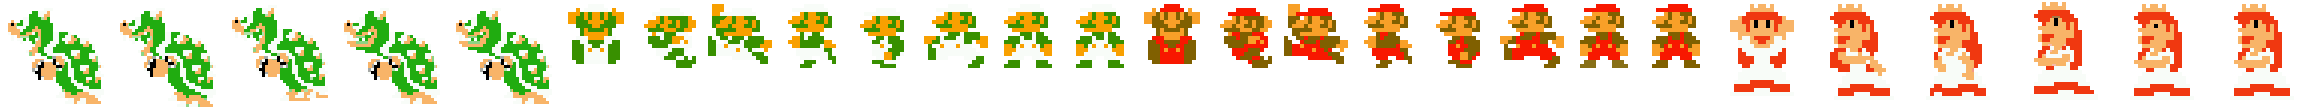 Super Paper Mario - Mega Star Characters & Pal Pills